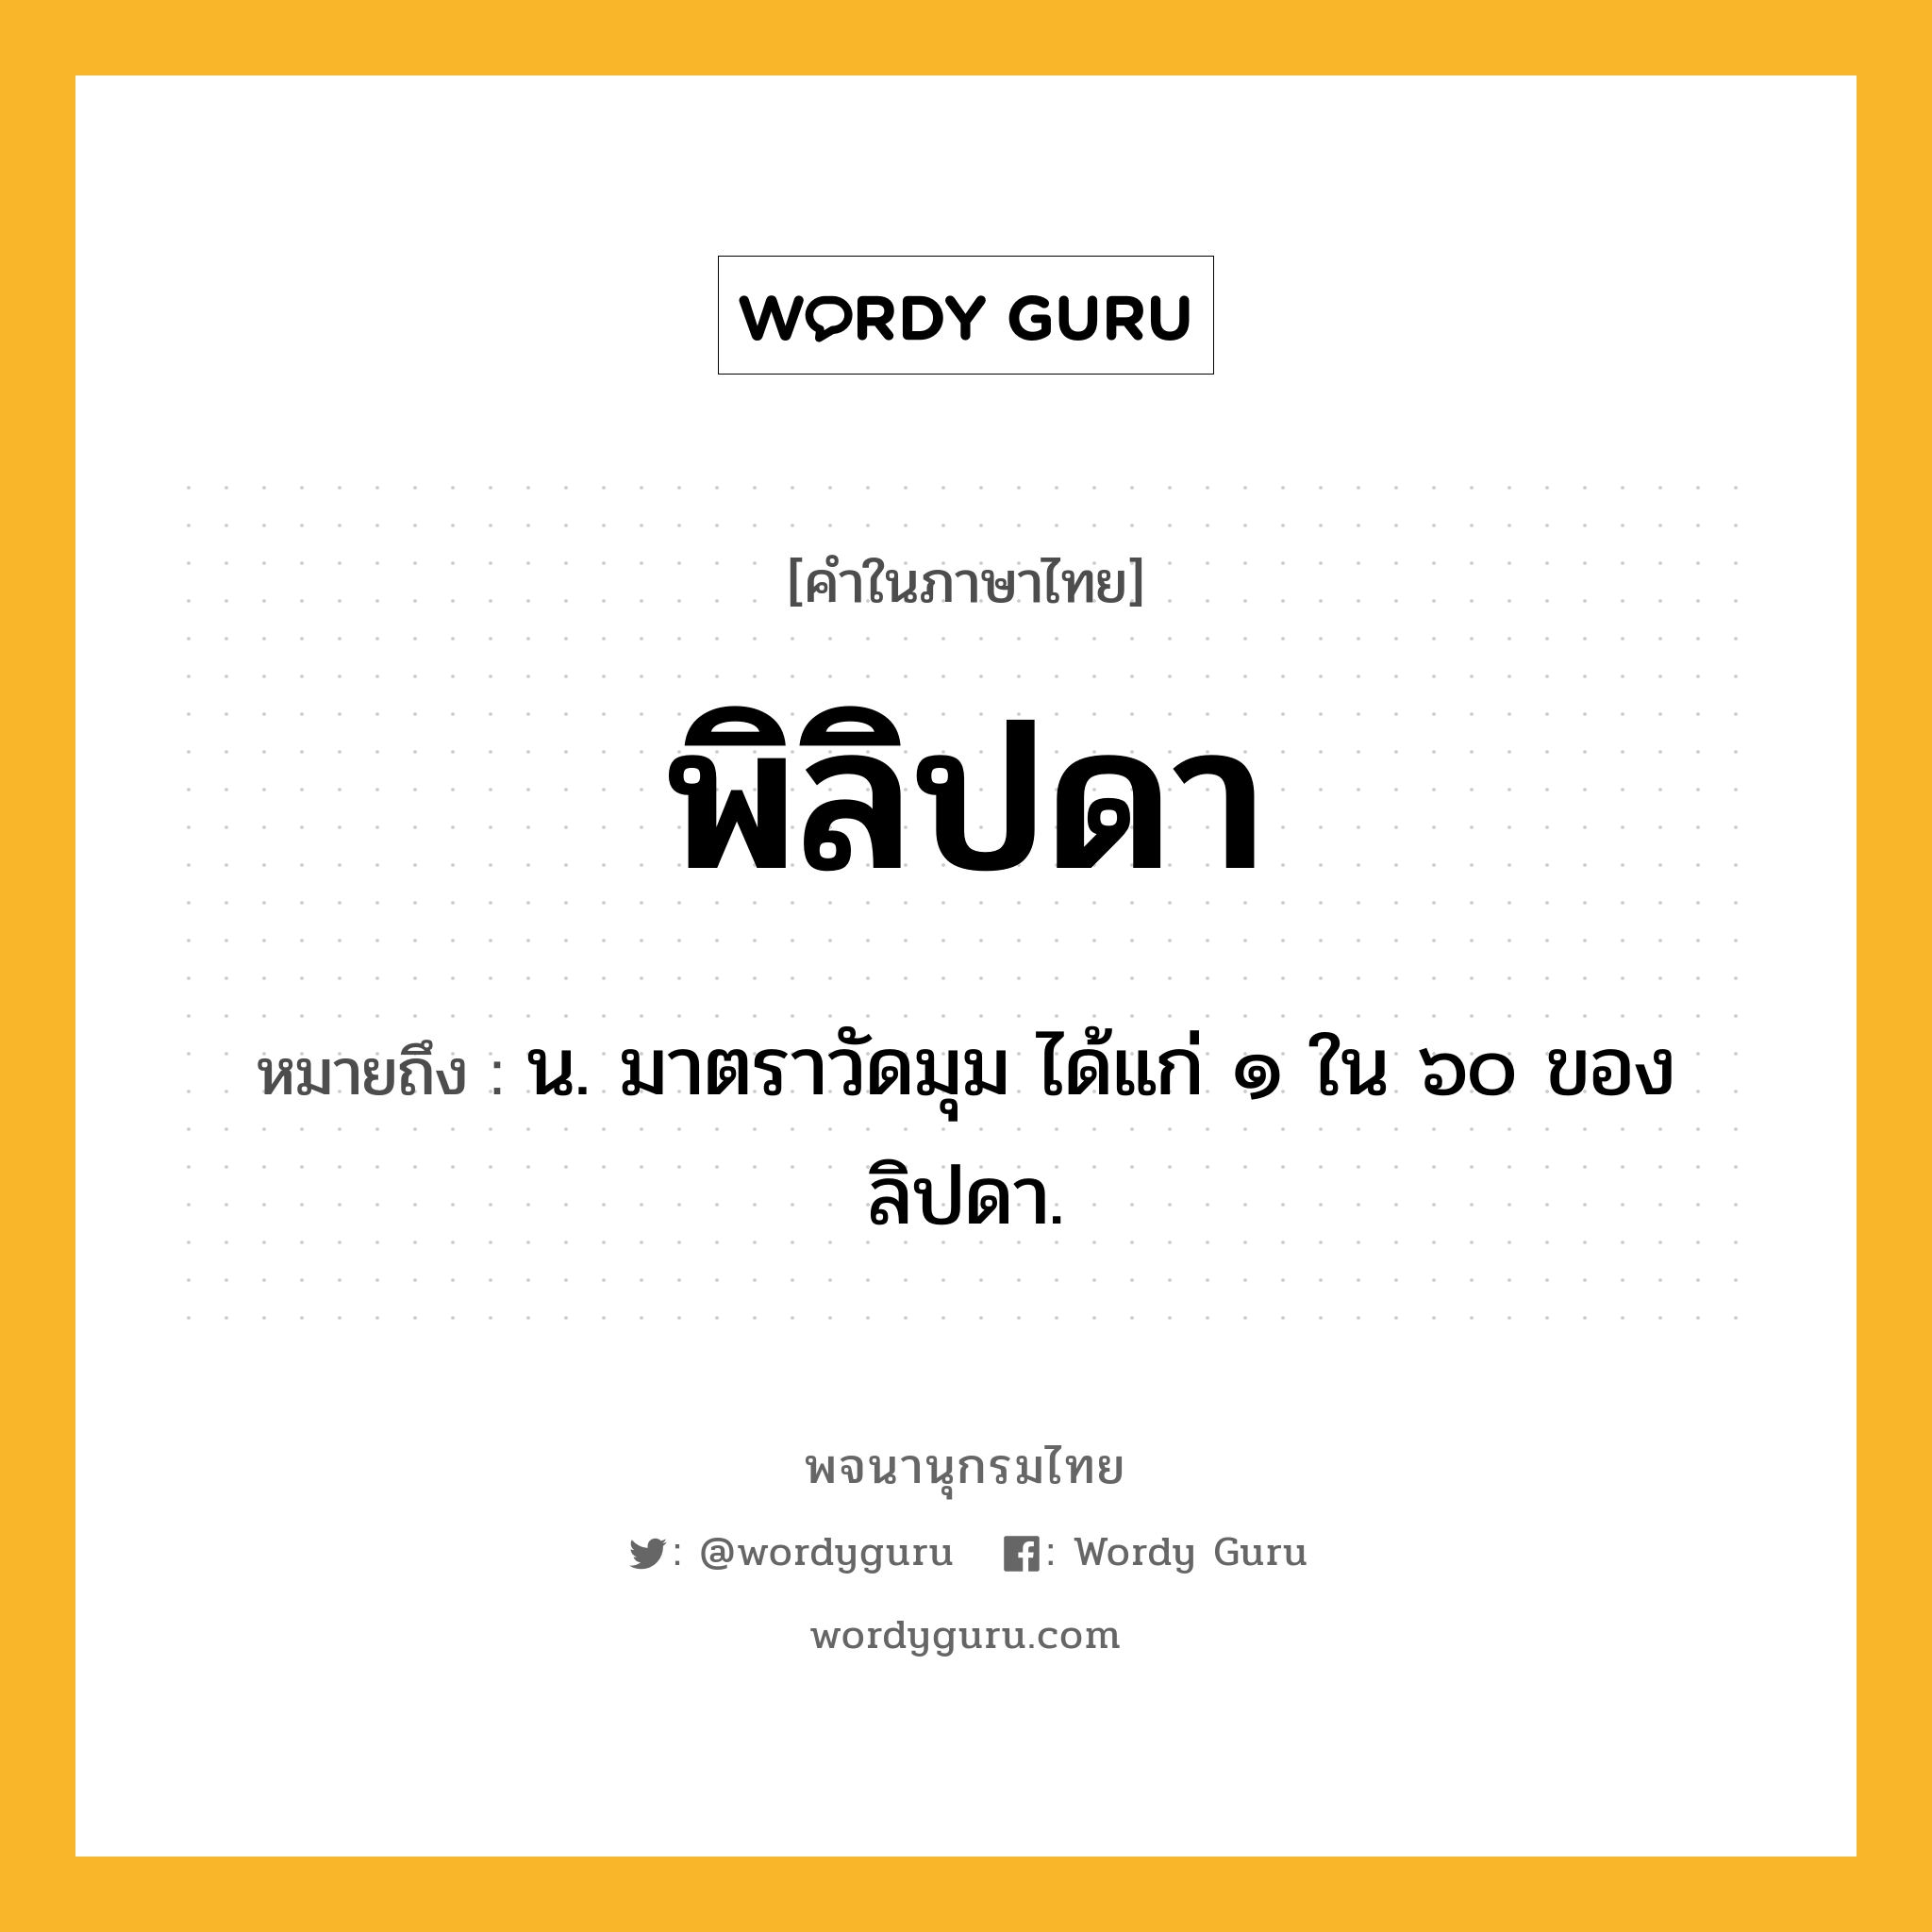 พิลิปดา หมายถึงอะไร?, คำในภาษาไทย พิลิปดา หมายถึง น. มาตราวัดมุม ได้แก่ ๑ ใน ๖๐ ของลิปดา.